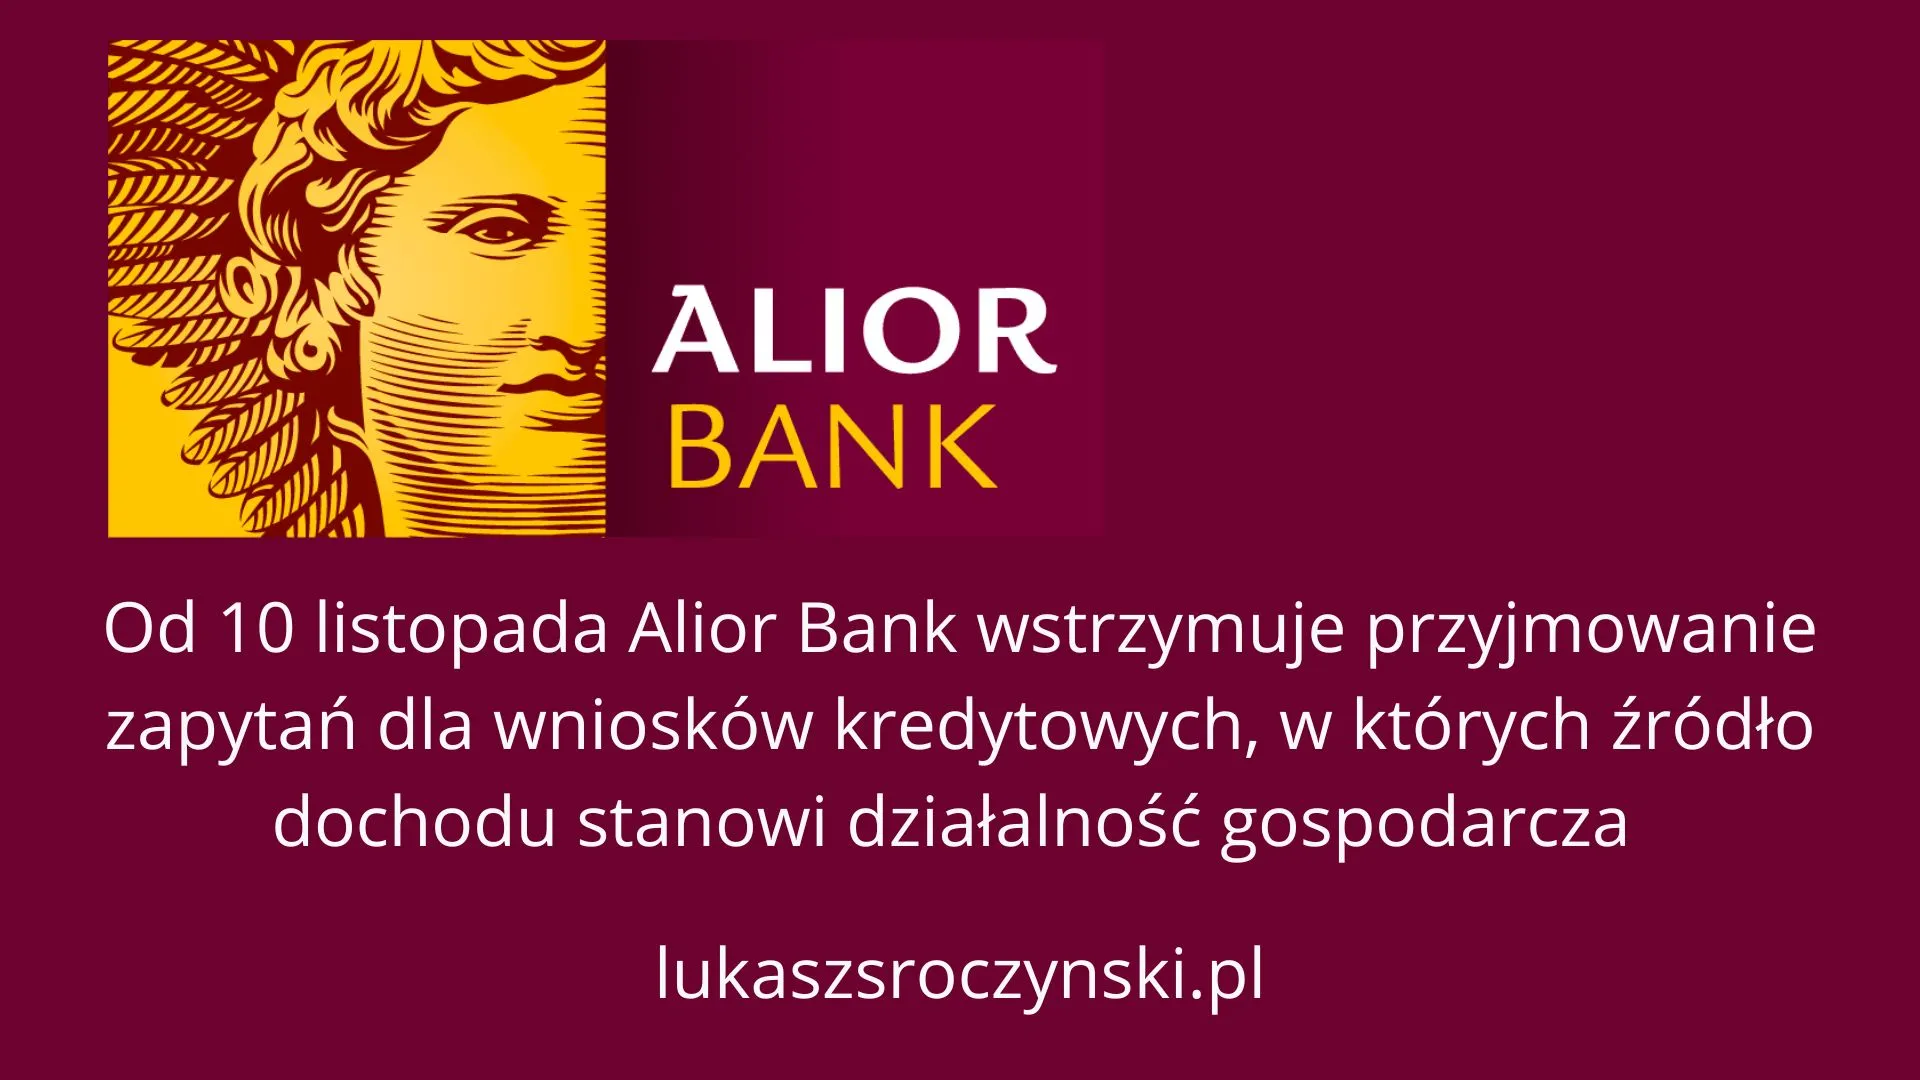 "Od 10 listopada Alior Bank wstrzymuje przyjmowanie zapytań dla wniosków kredytowych, w których źródło dochodu stanowi działalność gospodarcza"